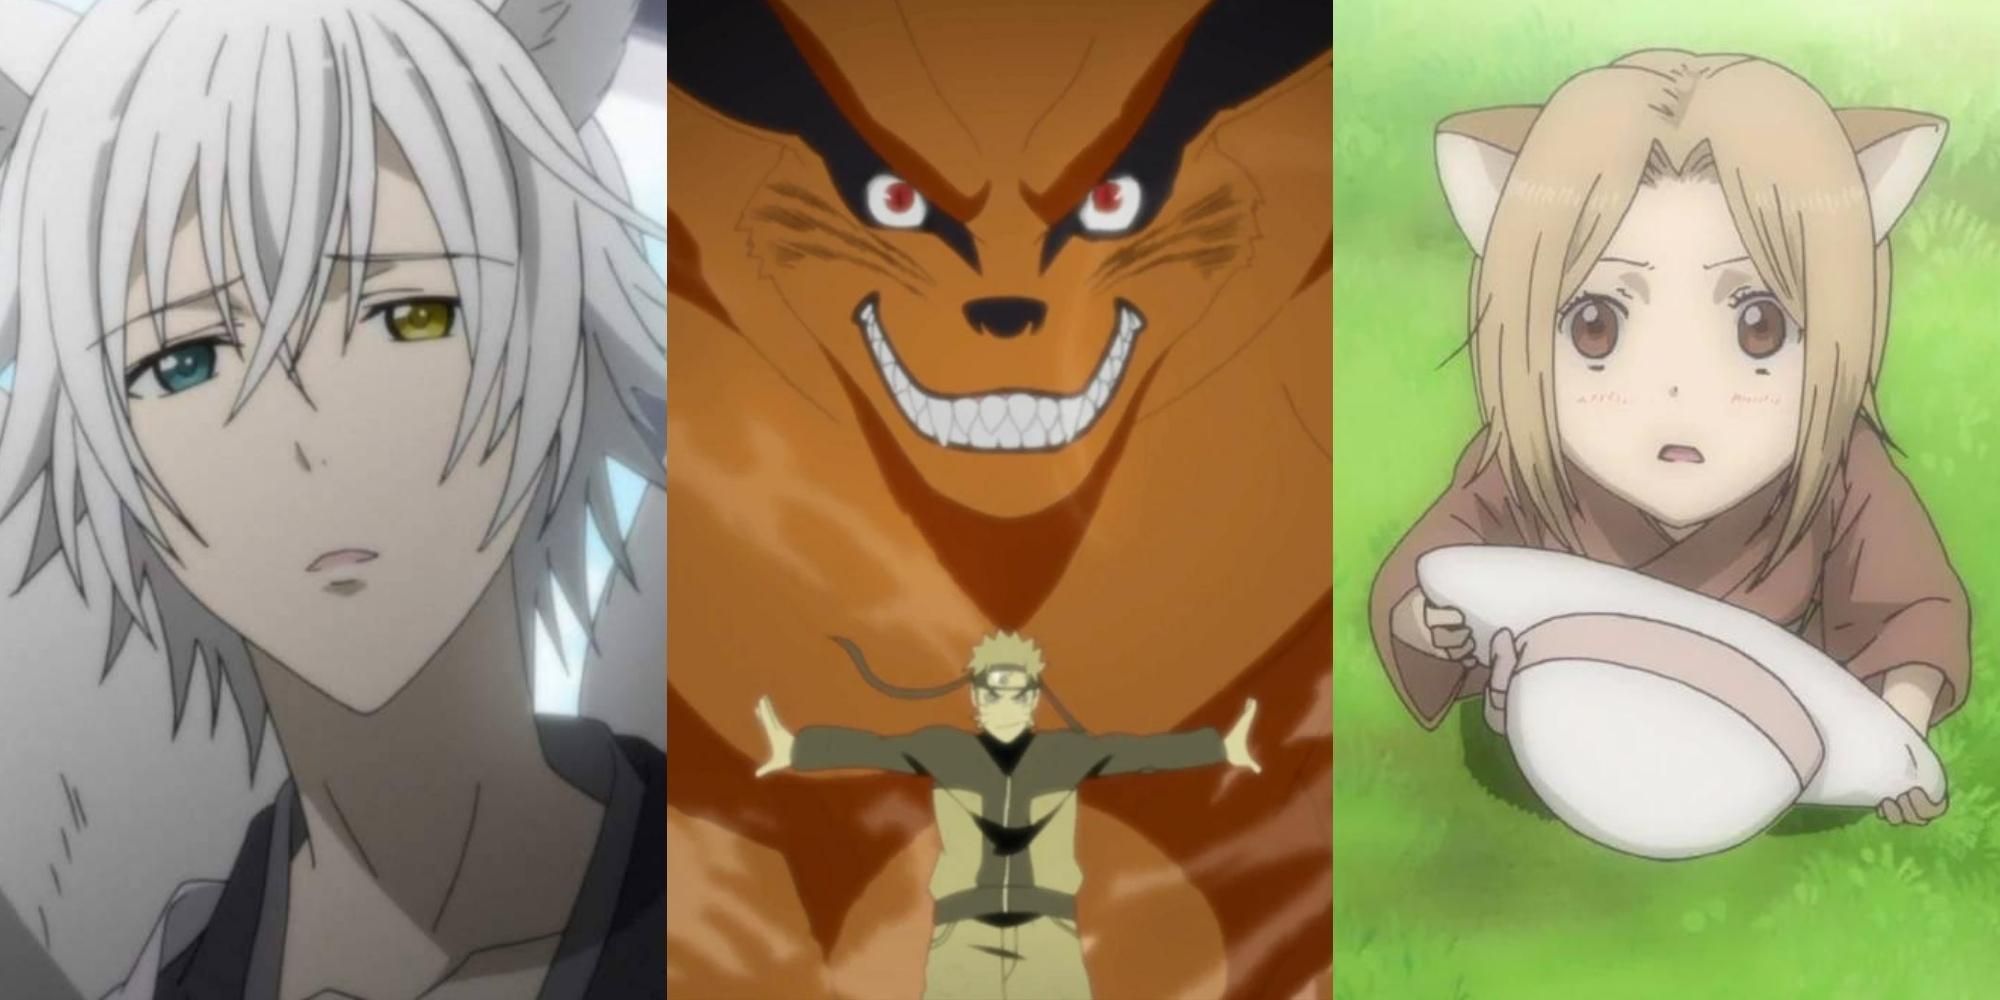 Kitsune | Anime, Anime devil, Kitsune-demhanvico.com.vn